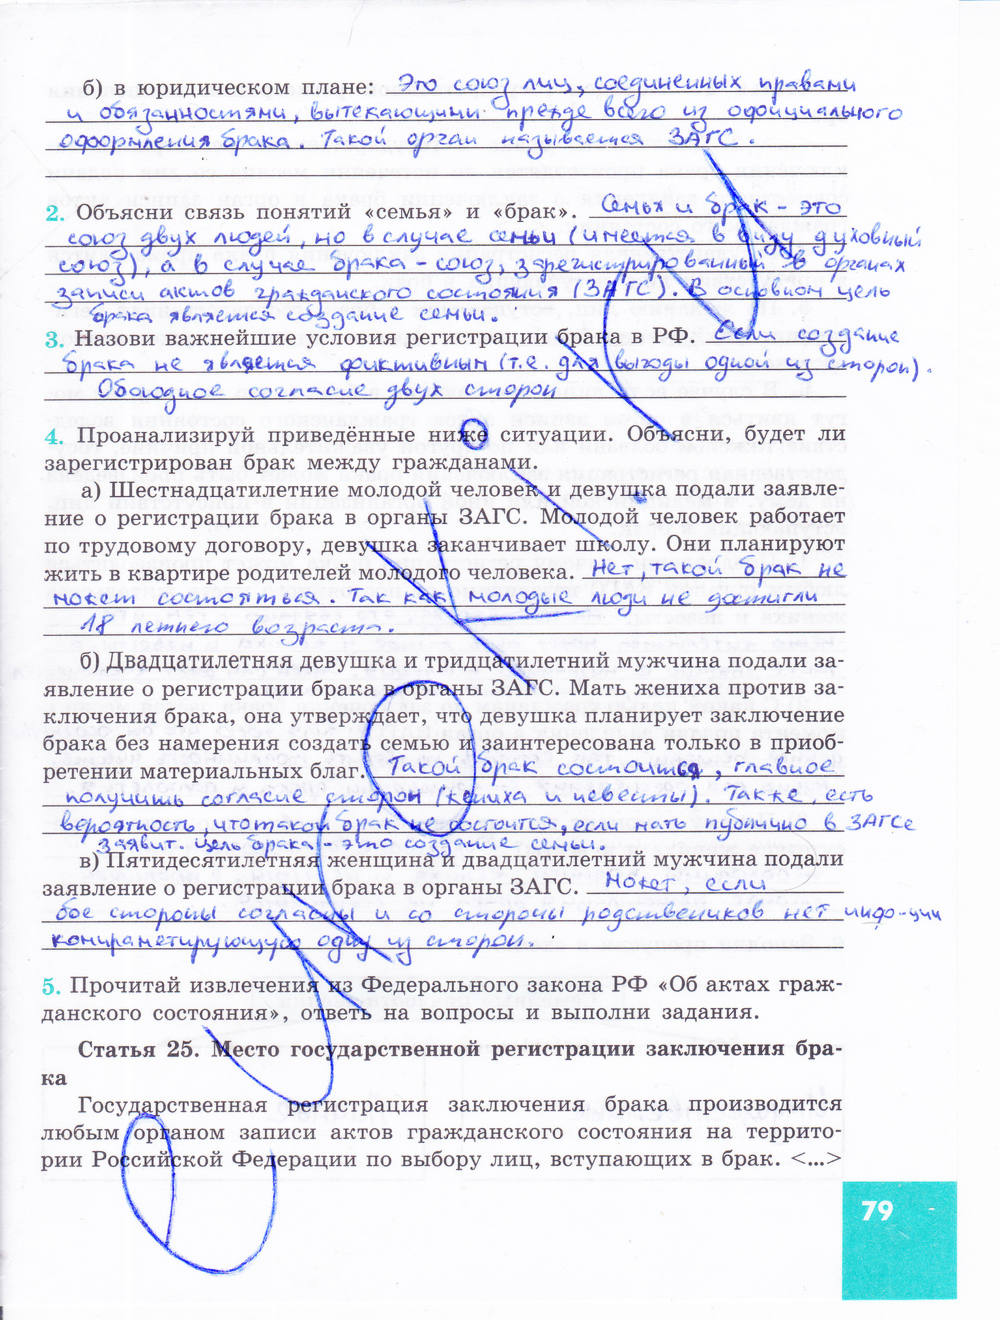 Зеленая тетрадь, 9 класс, Котова О.А. Лискова Т.Е., 2015, задание: стр. 79